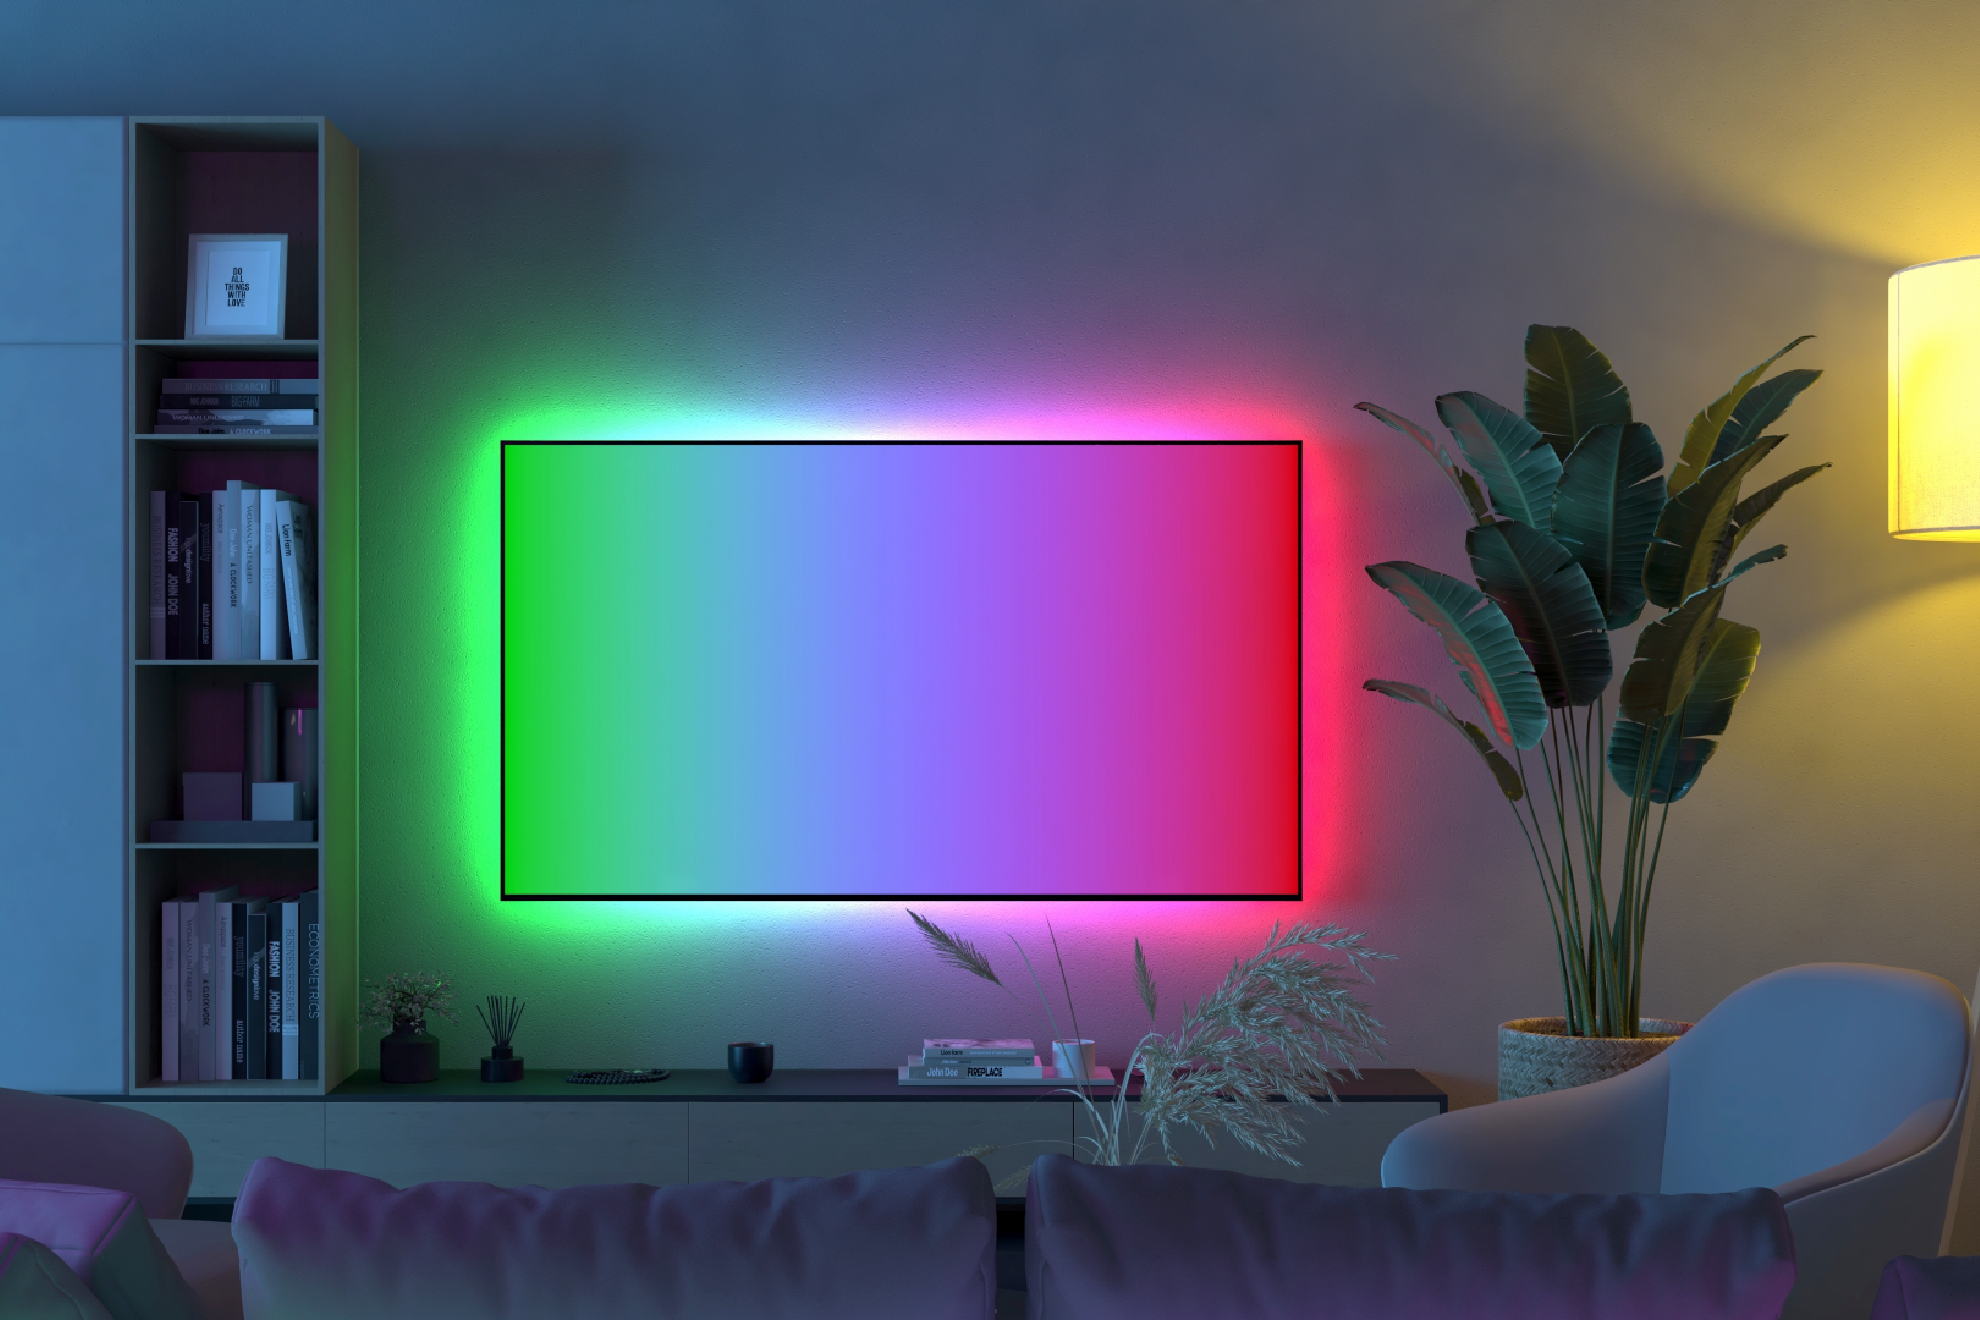 Estas luces led para la televisión se pueden manejar a través de una 'app' móvil.